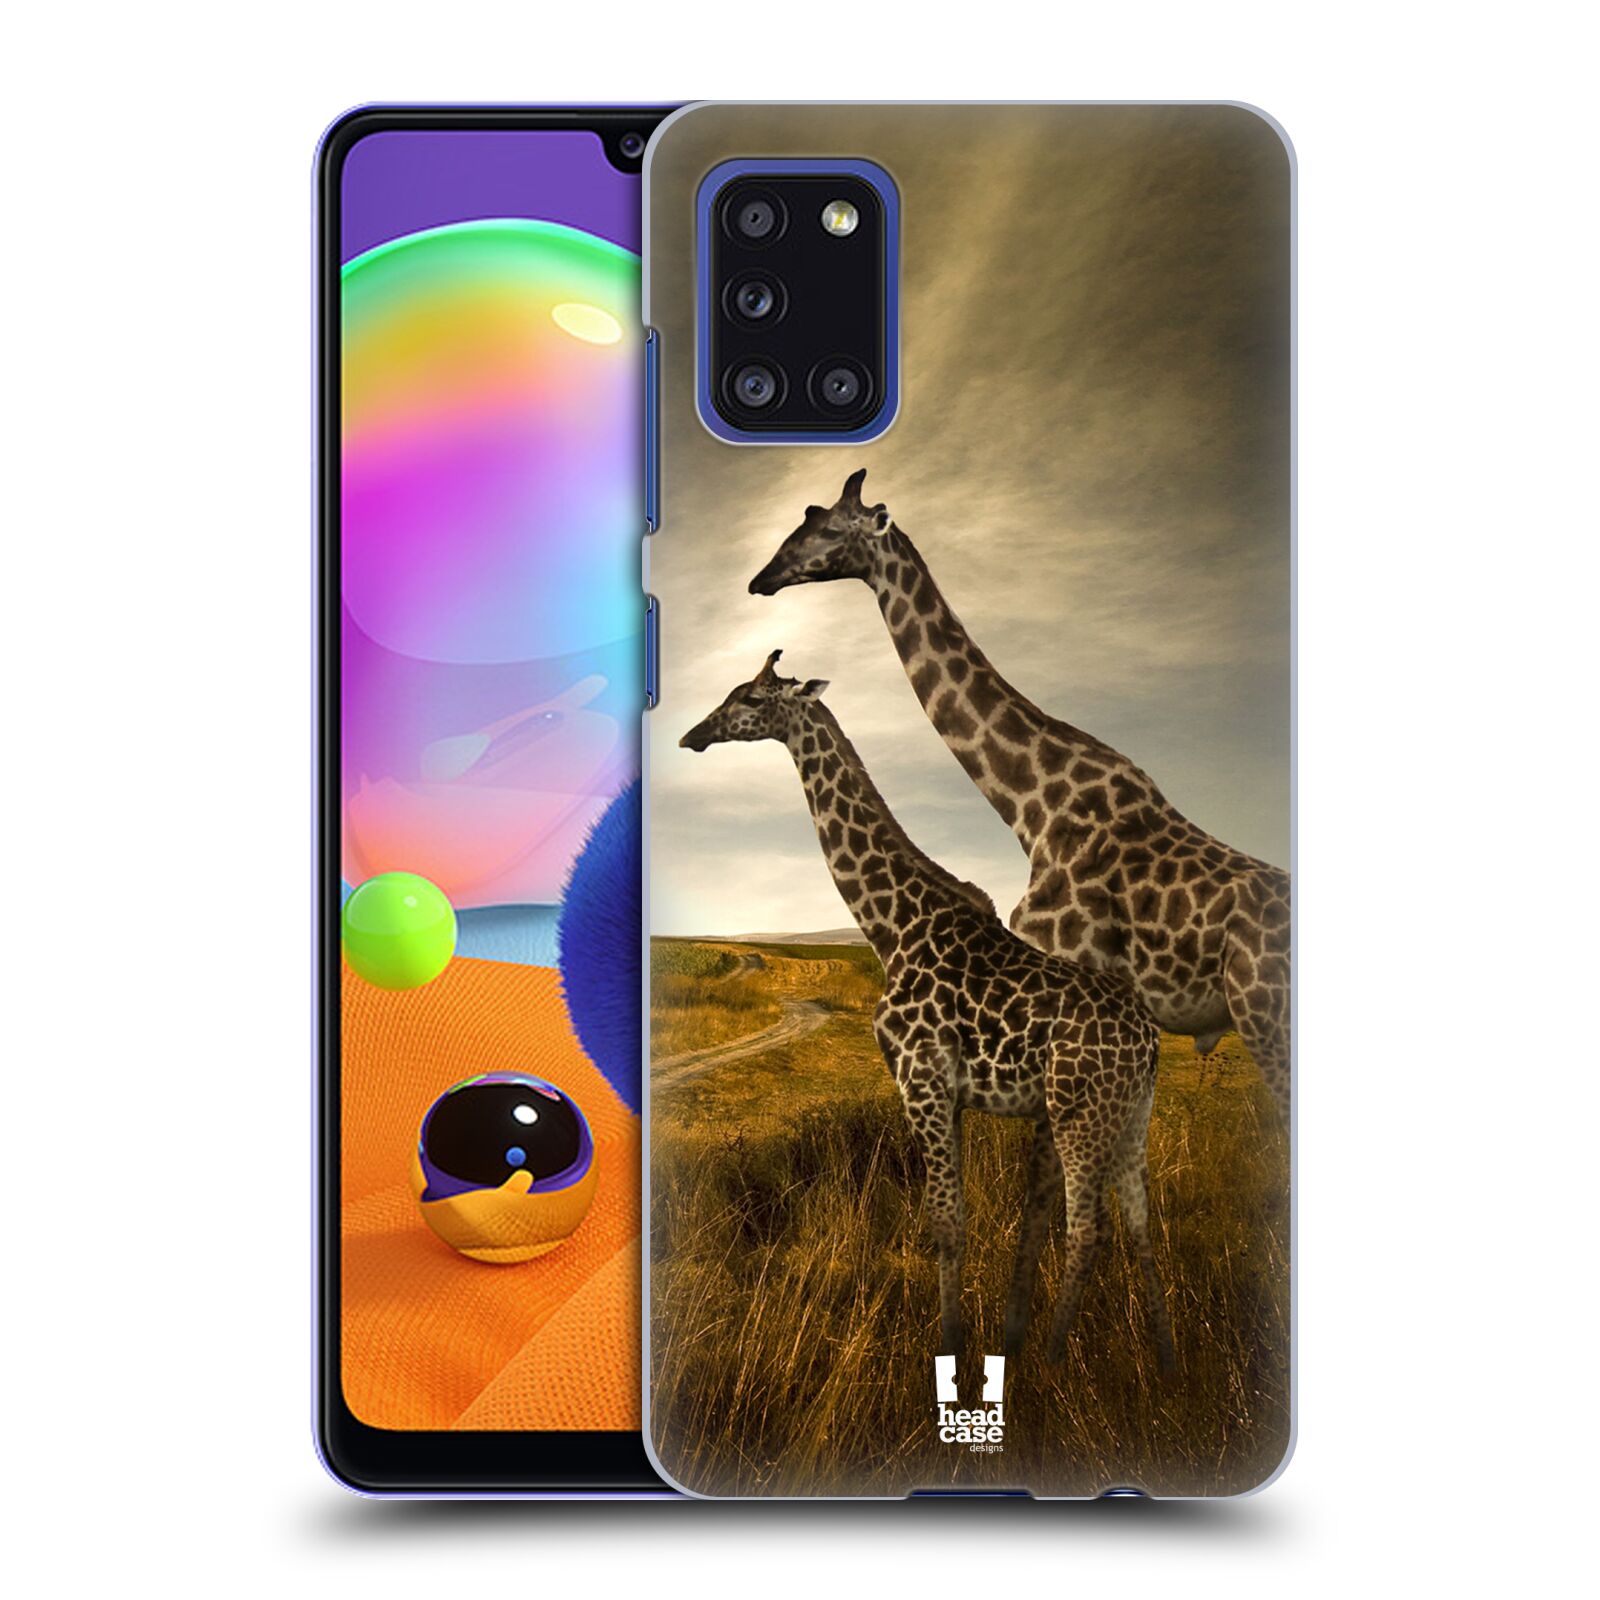 Zadní obal pro mobil Samsung Galaxy A31 - HEAD CASE - Svět zvířat žirafy